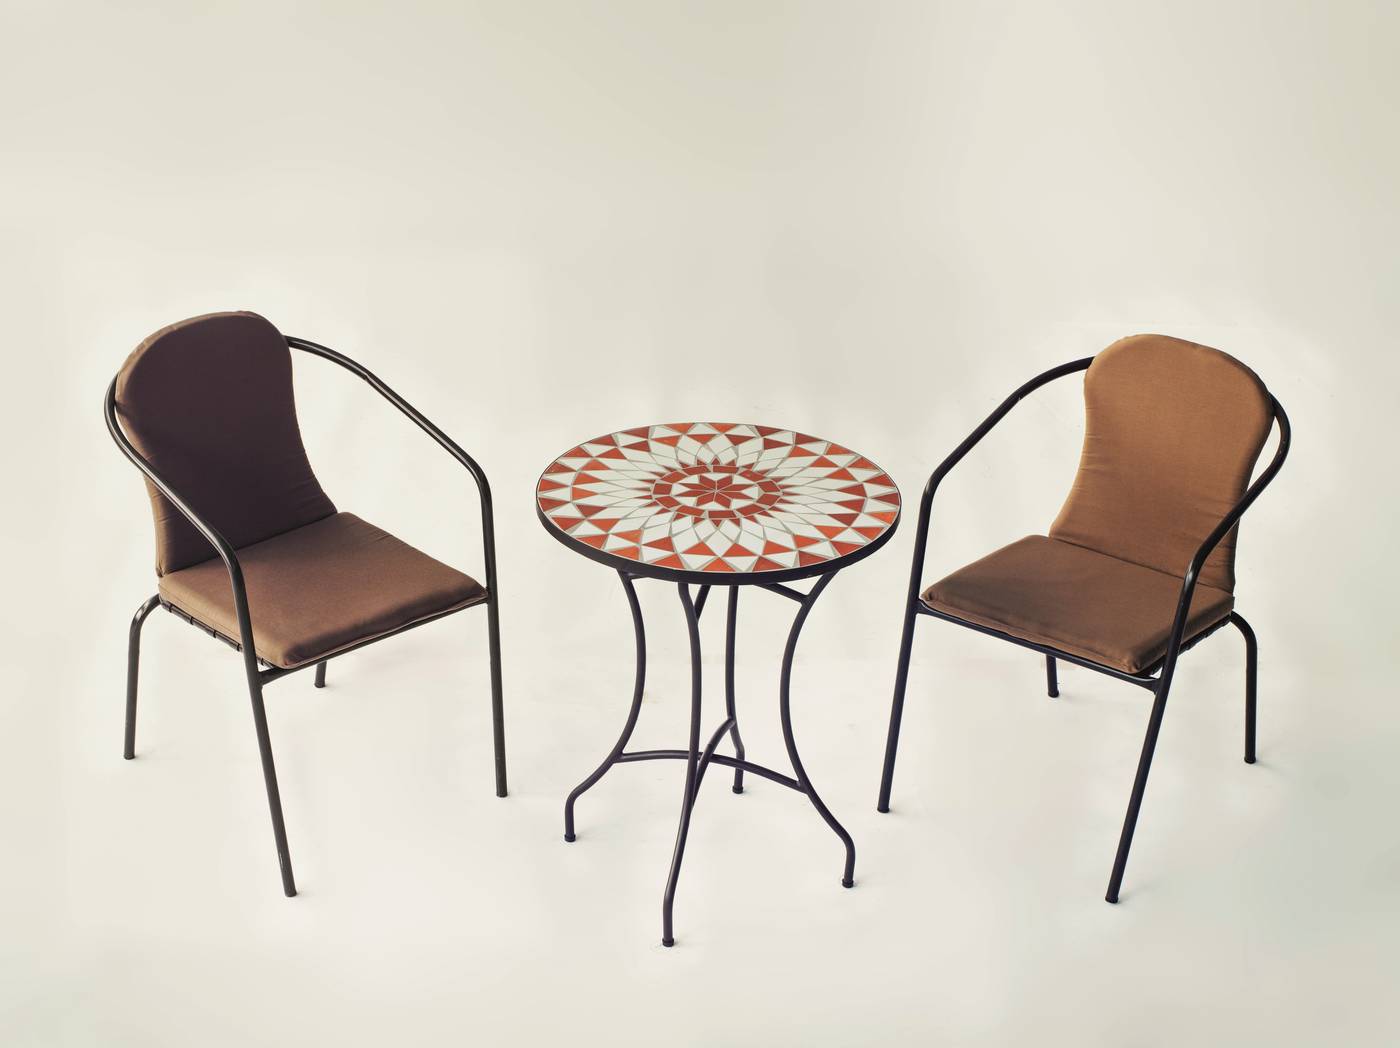 Conjunto Mosaico Neypal-Marsel - Mesa de forja color bronce, con tablero mosaico de 60 cm + 2 sillones apilables de aluminio con cojín.